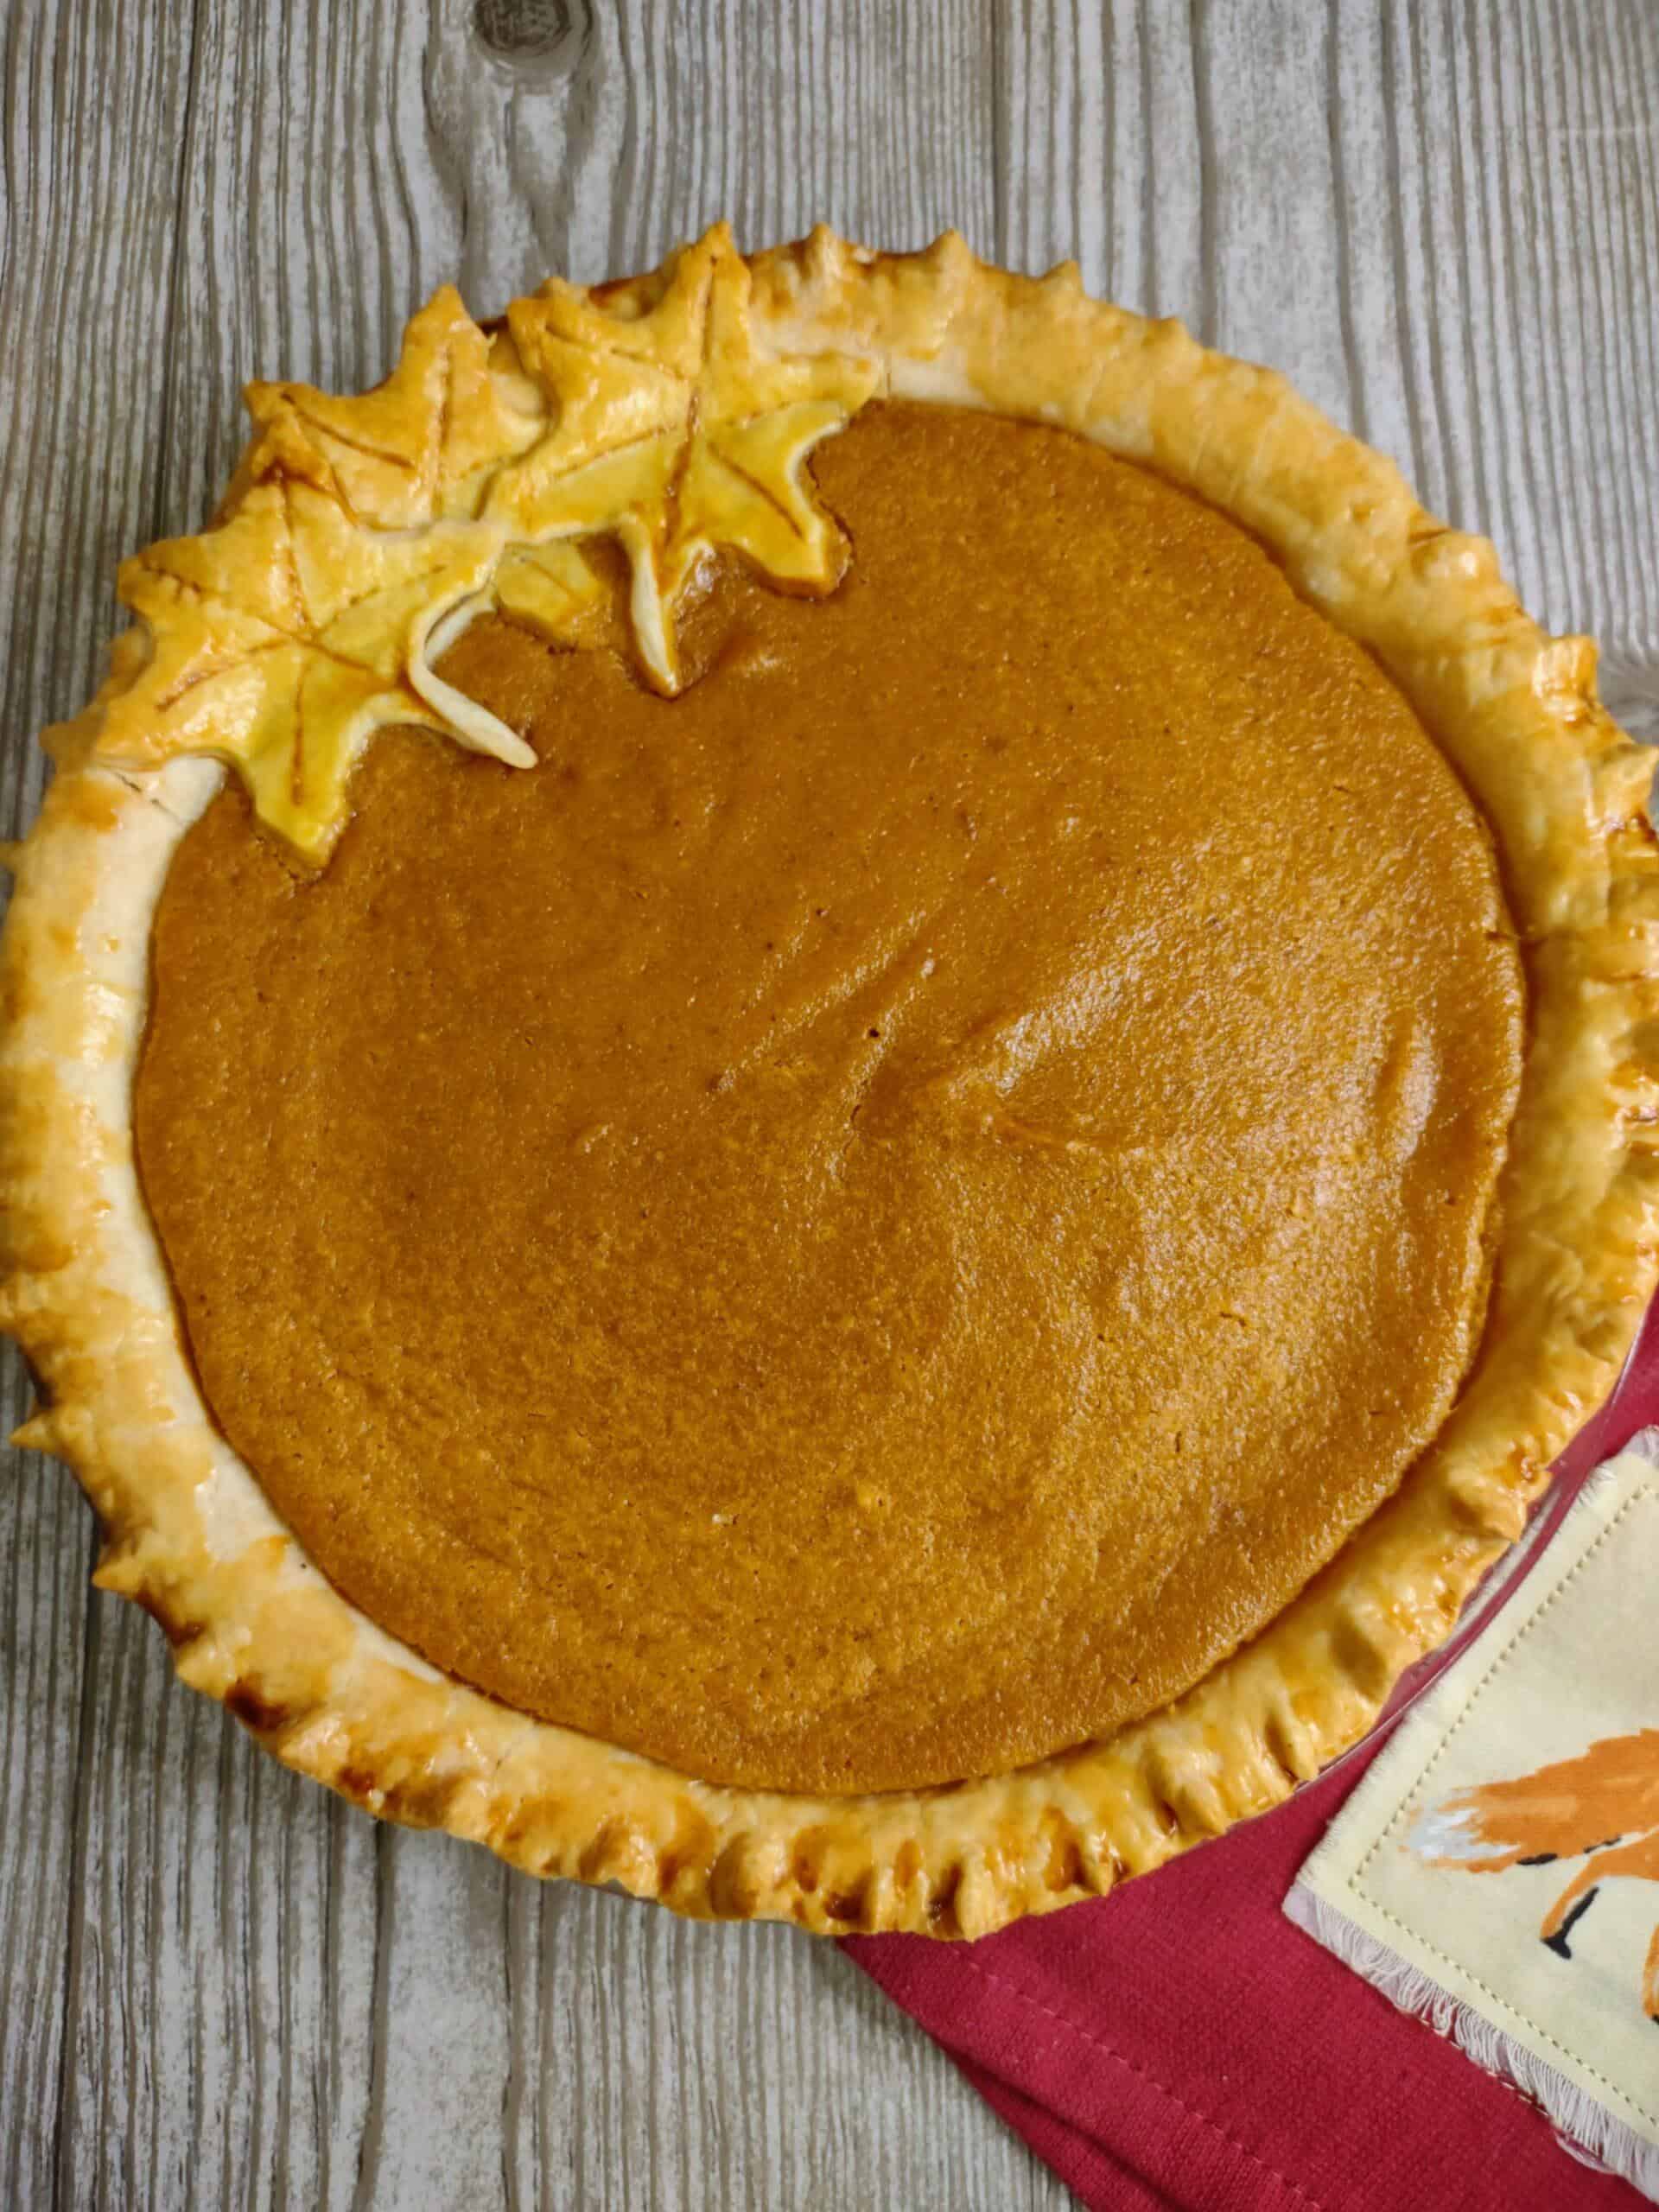 Sweet Potato Pie,sweet potato pie recipe,sweet potato pie ingredients,sweet potato pie vs pumpkin pie